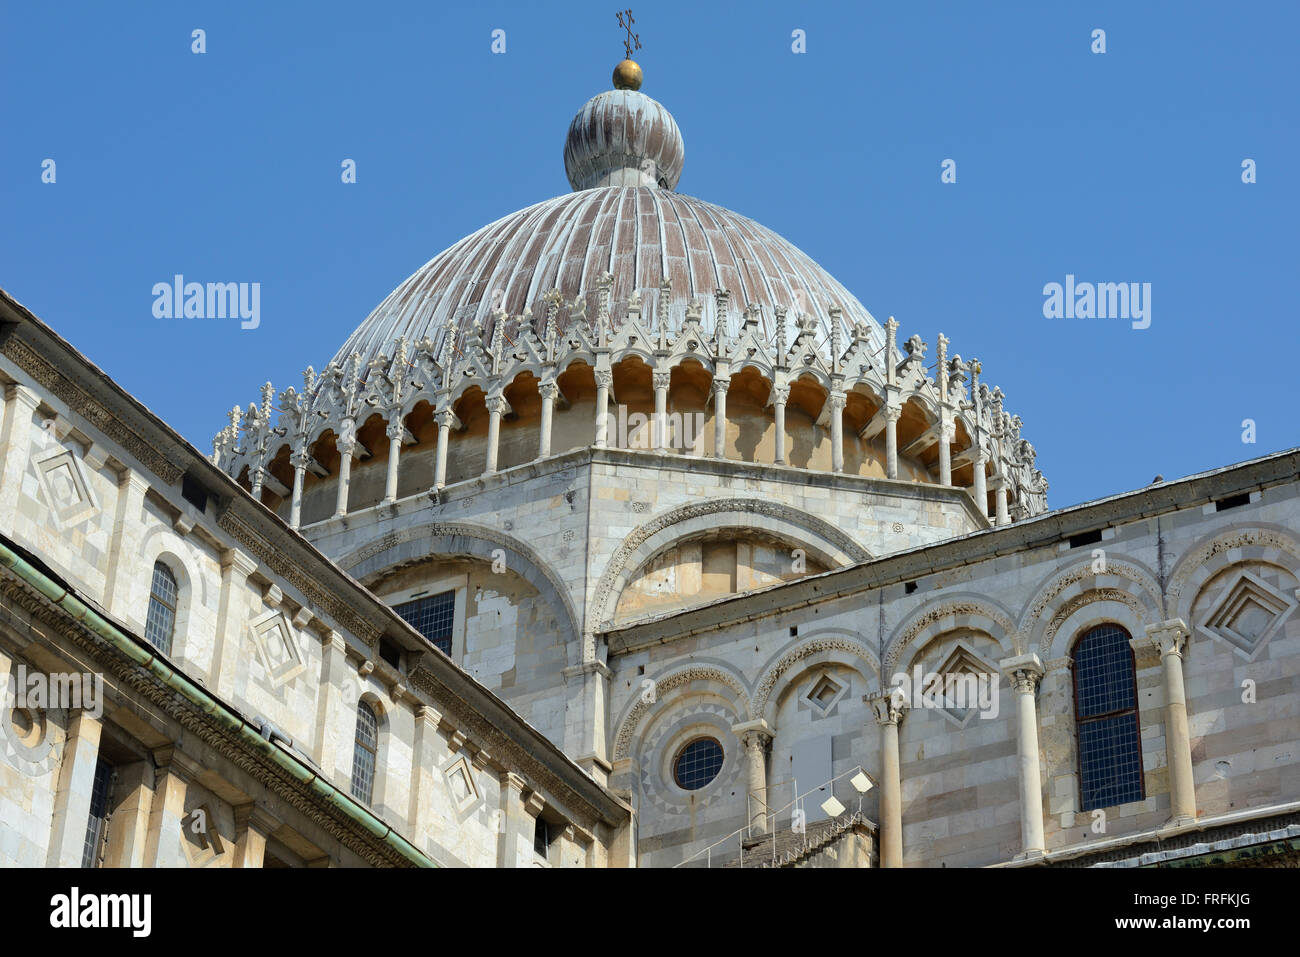 Dome of Cathedral Santa Maria Assunta, Piazza del Duomo, Cathedral Square, Campo dei Miracoli, Square of Miracles, UNESCO World Heritage Site Stock Photo